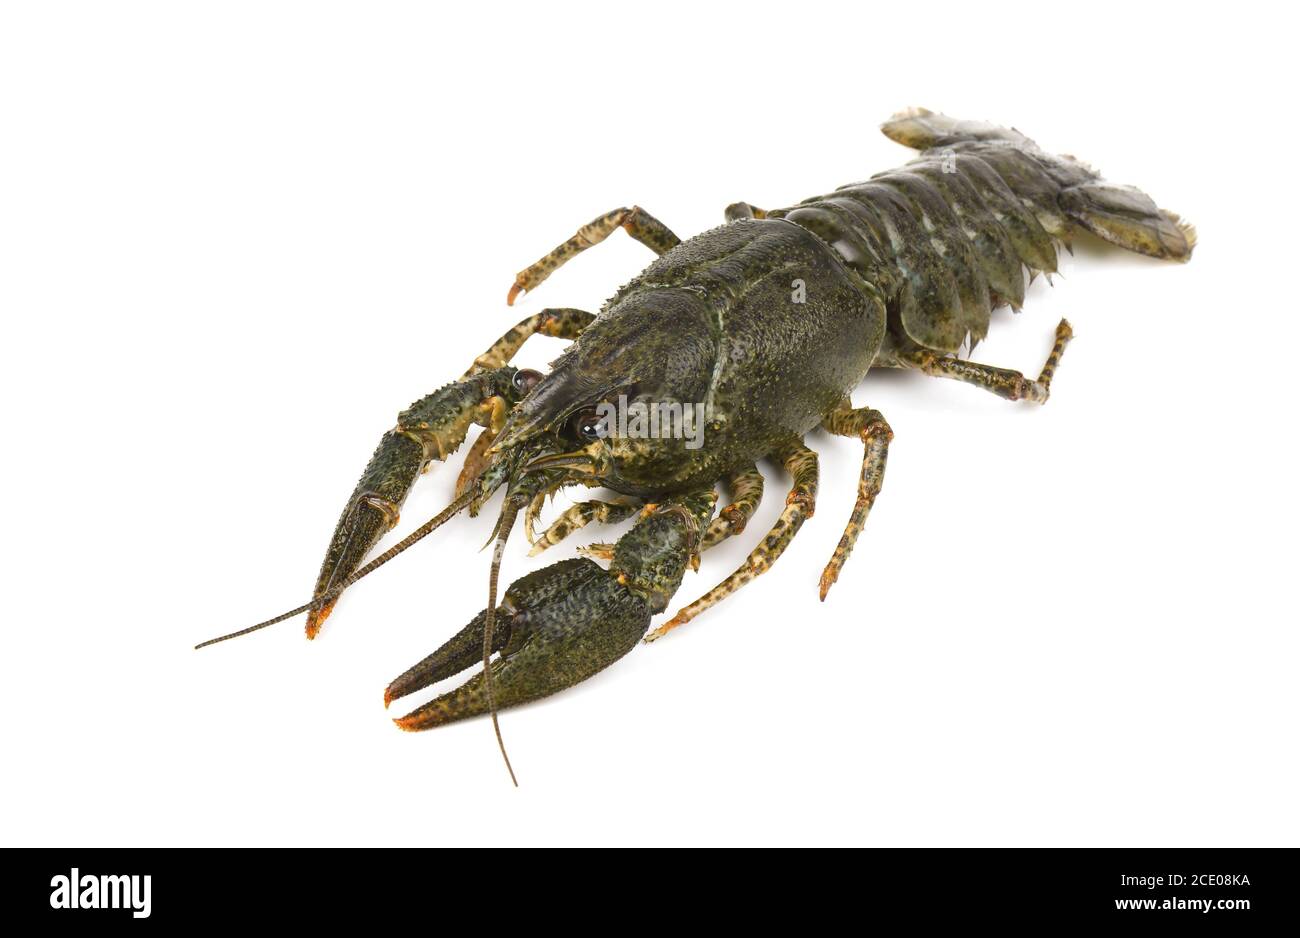 Live crayfish isolated on white background Stock Photo